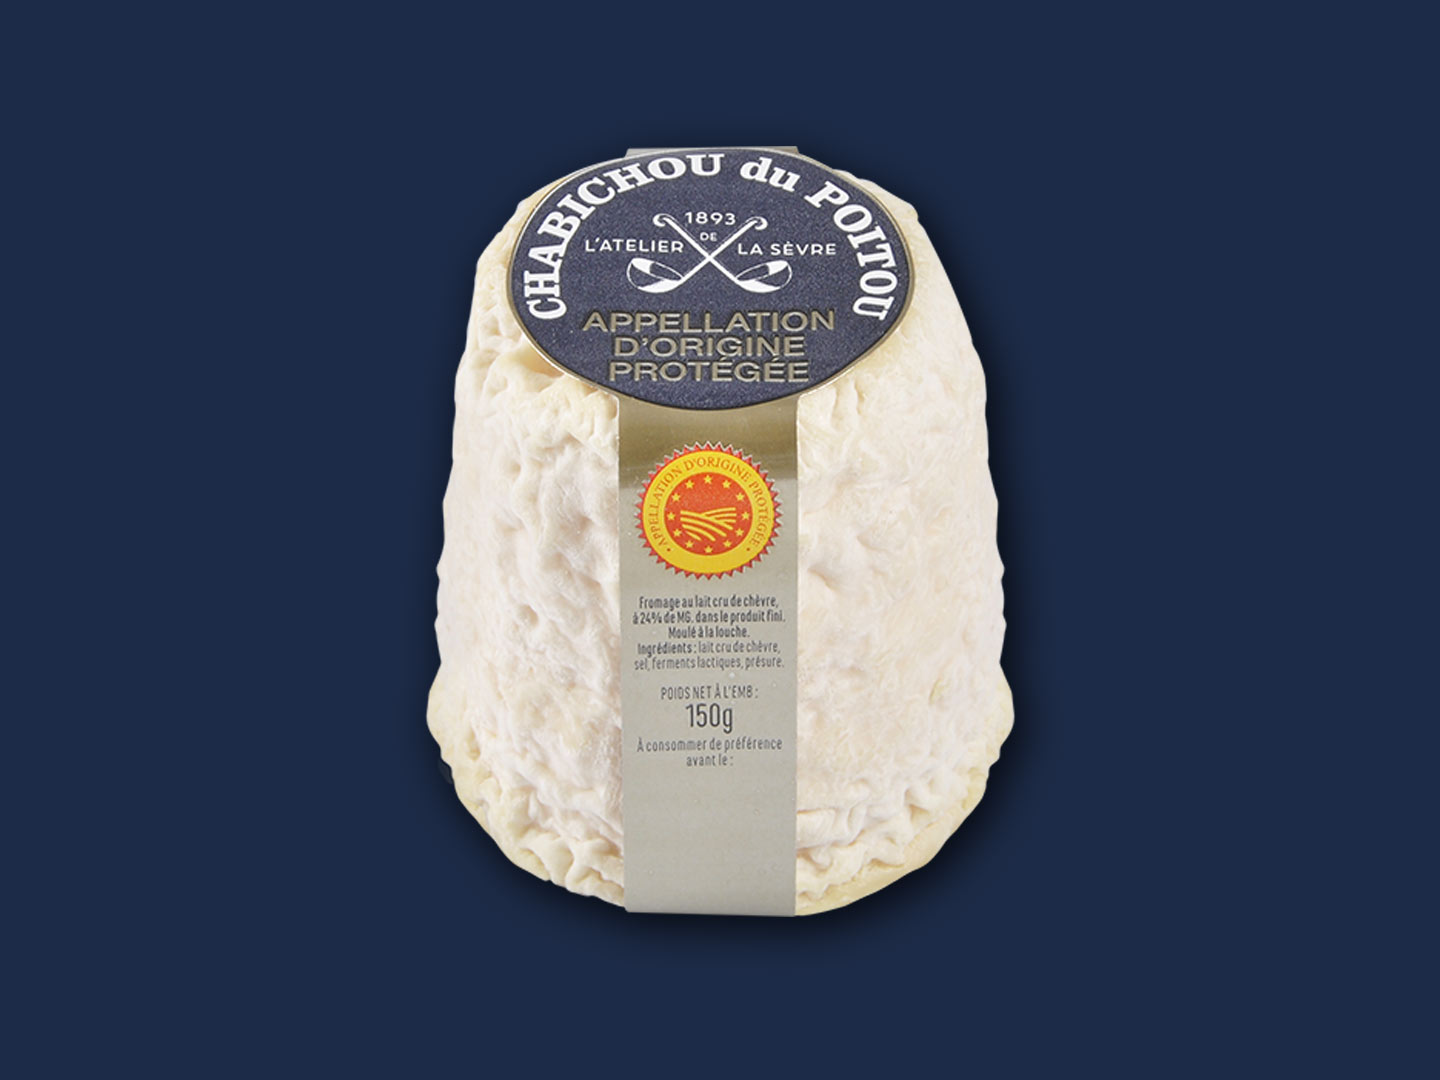 Le Chabichou du Poitou AOP 150g - fromage de chèvre au lait cru - moulé à la louche - Atelier de la sèvre